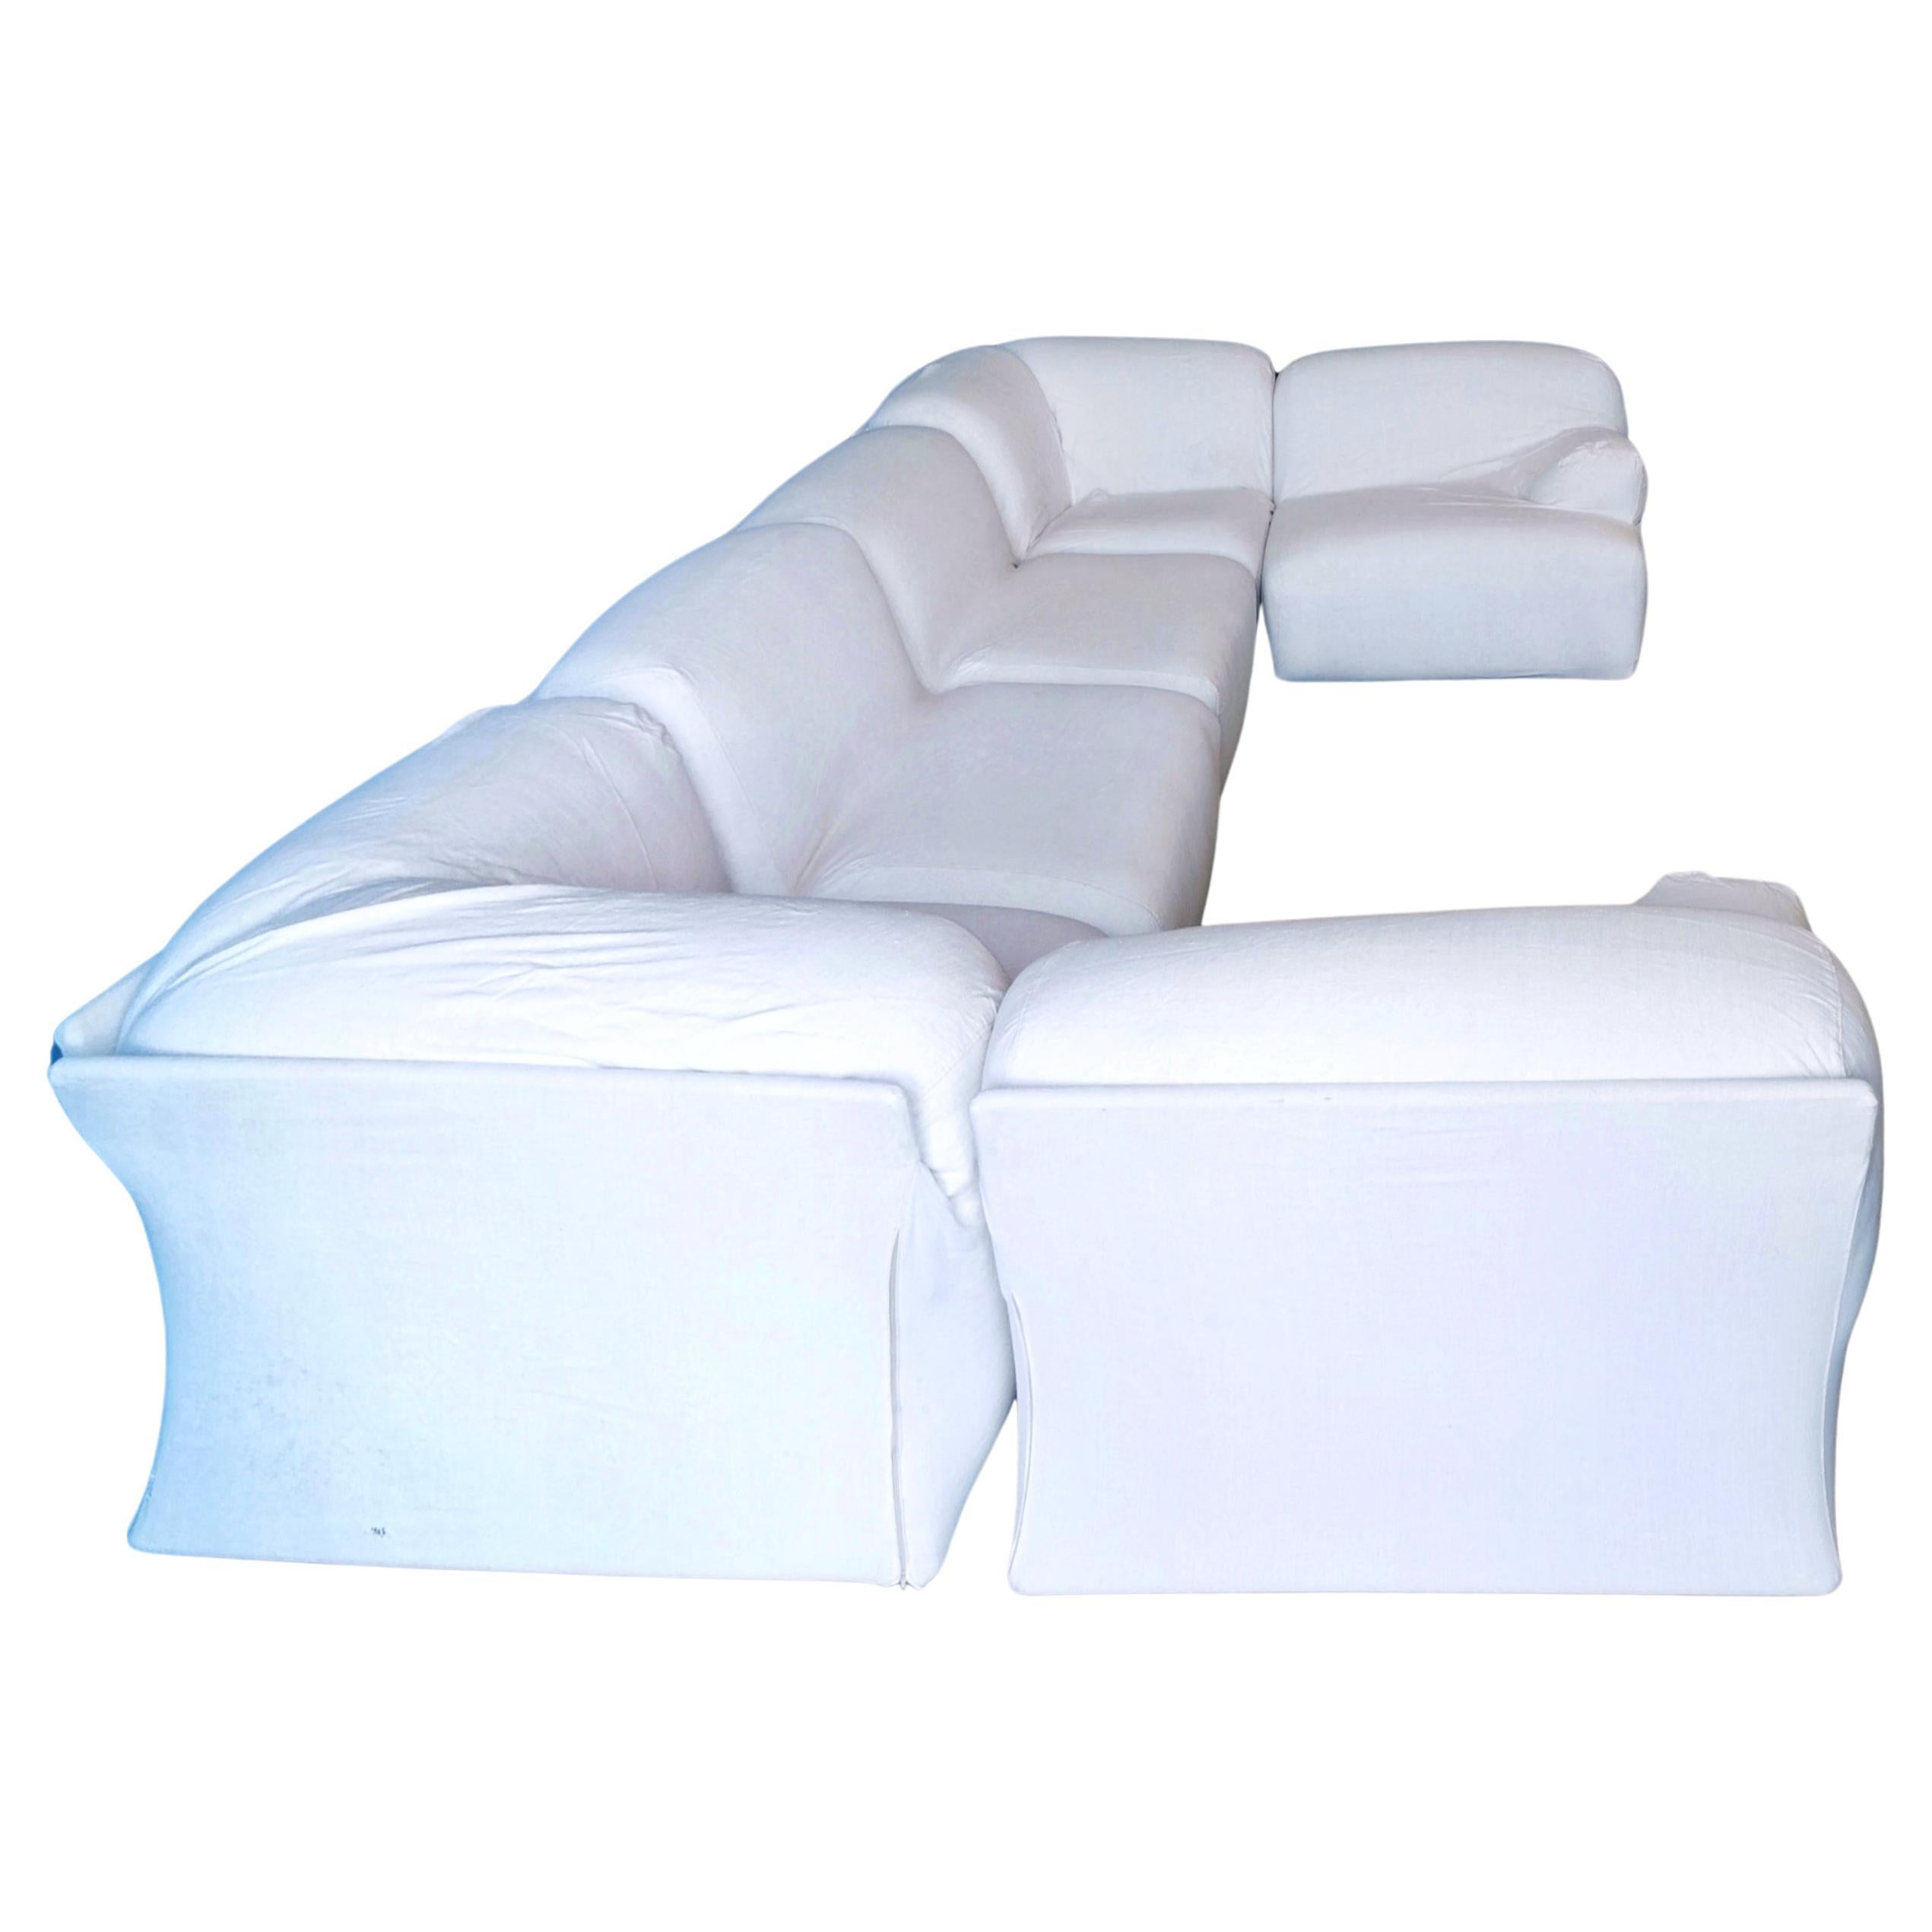 Il Divano Fiandra è un progetto di Vico Magistretti messo in produzione da Cassina nel 1975, il divano è composto da elementi modulari che compongono configurazioni in linea e ad angolo. La struttura è in multistrato di faggio mentre Il